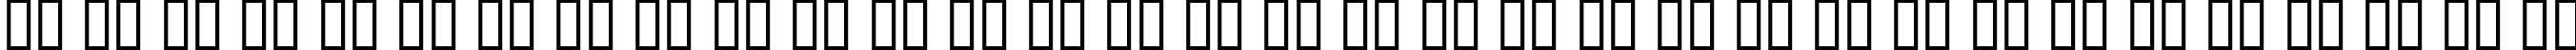 Пример написания русского алфавита шрифтом George Gibson